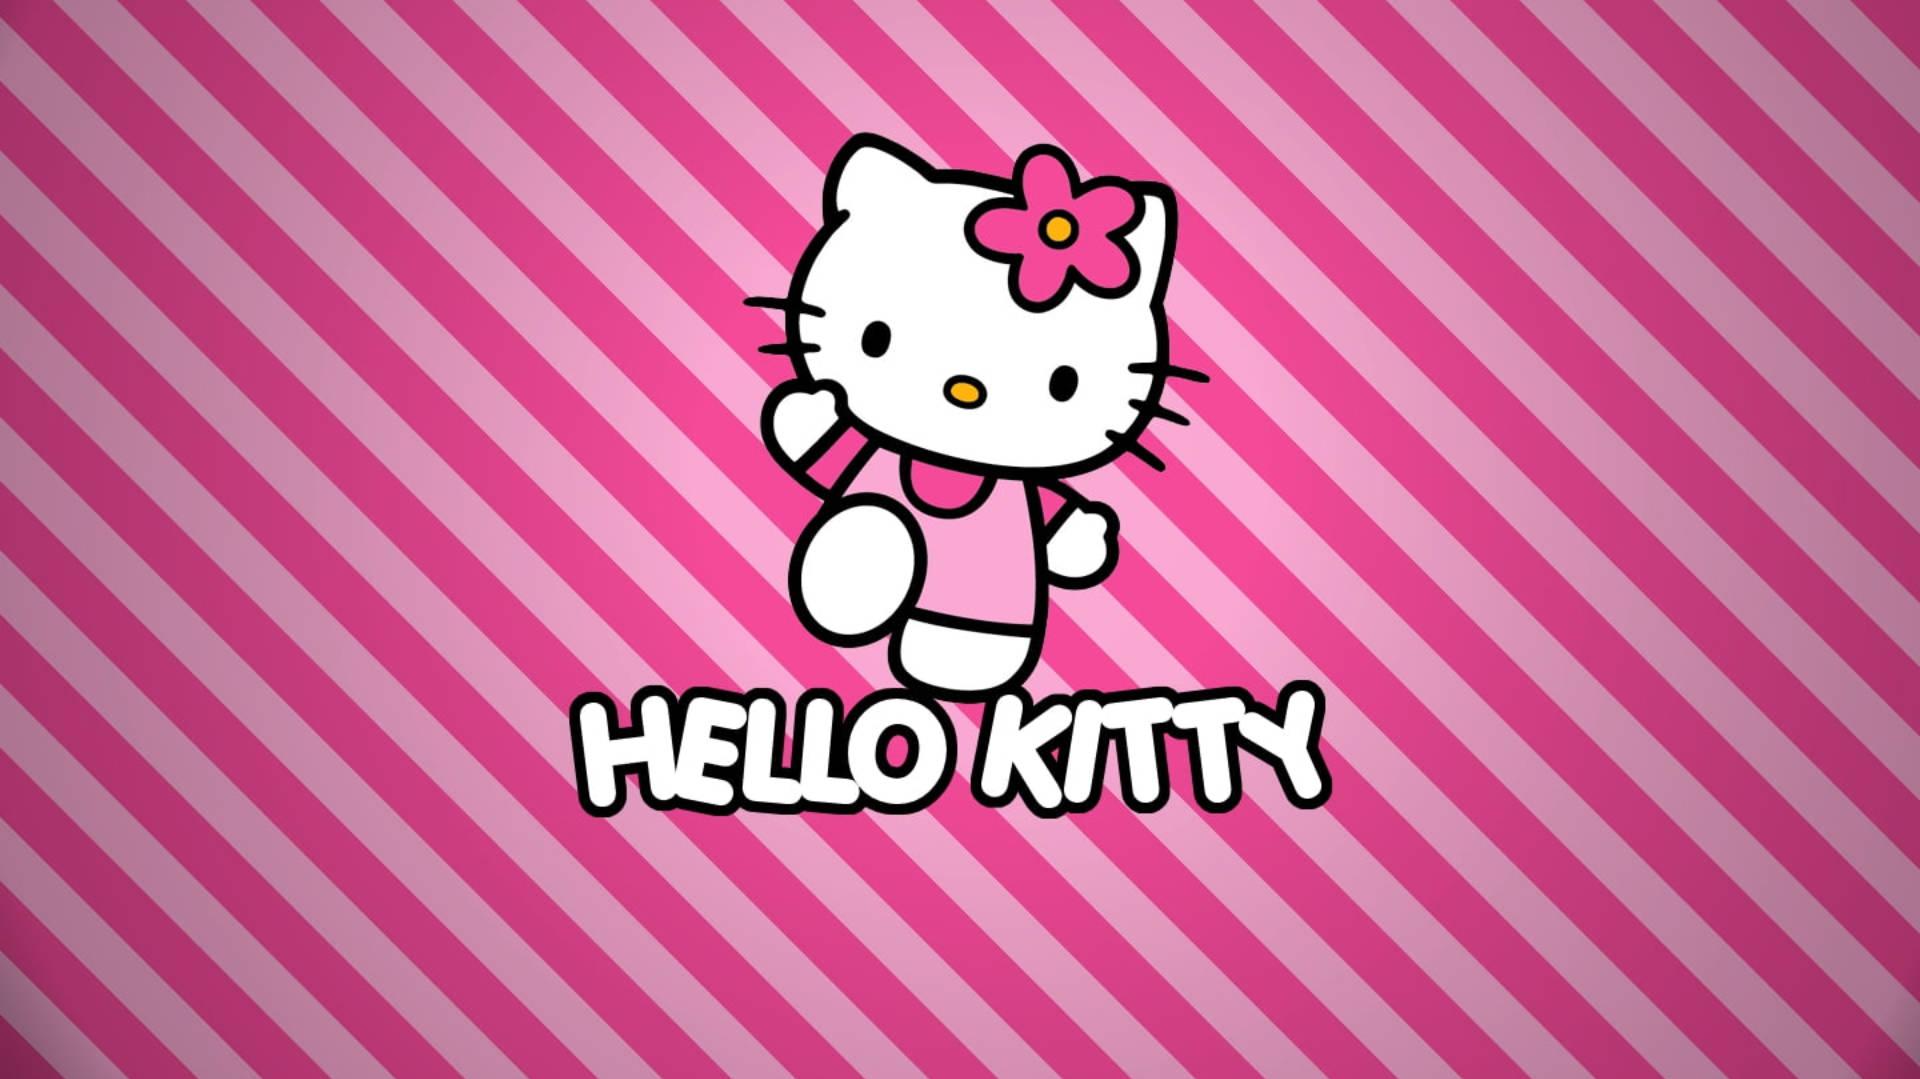 Download Pink Stripes Hello Kitty Desktop Wallpaper